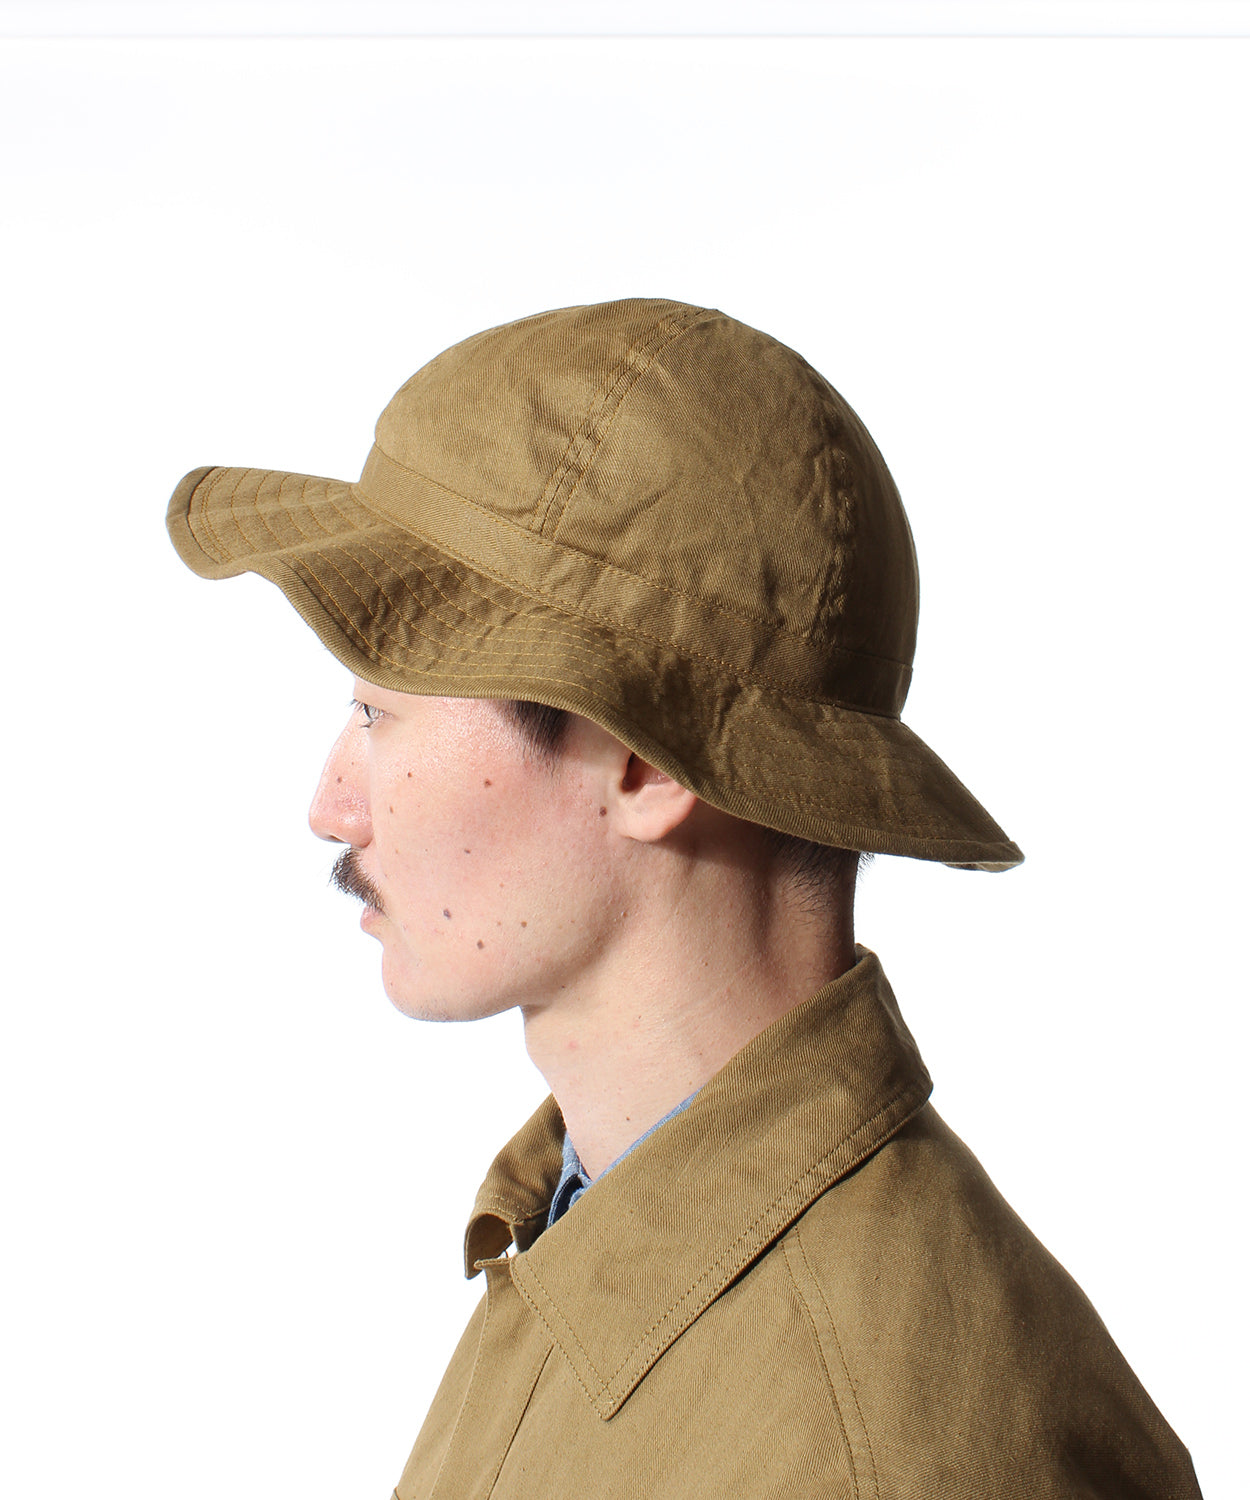 ●1918年陆军帽子